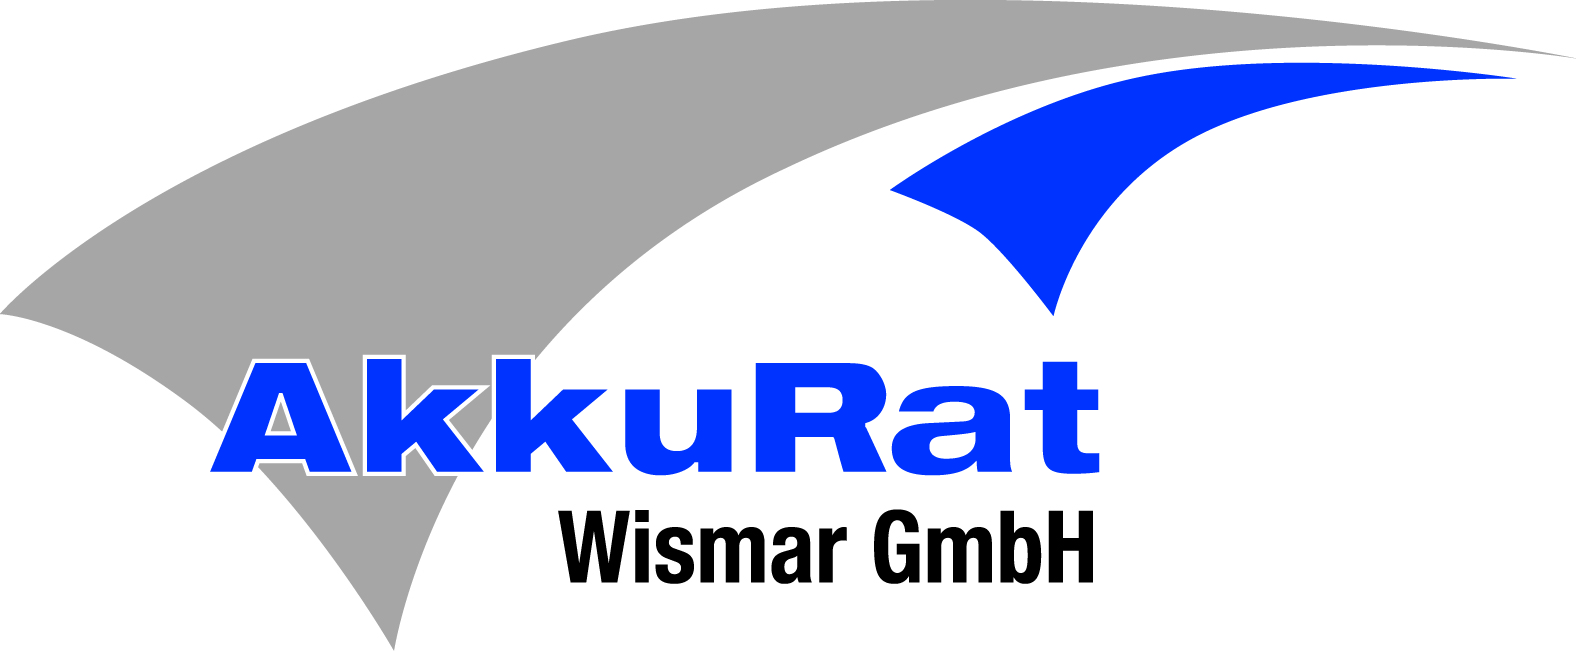 AkkuRat Wismar GmbH